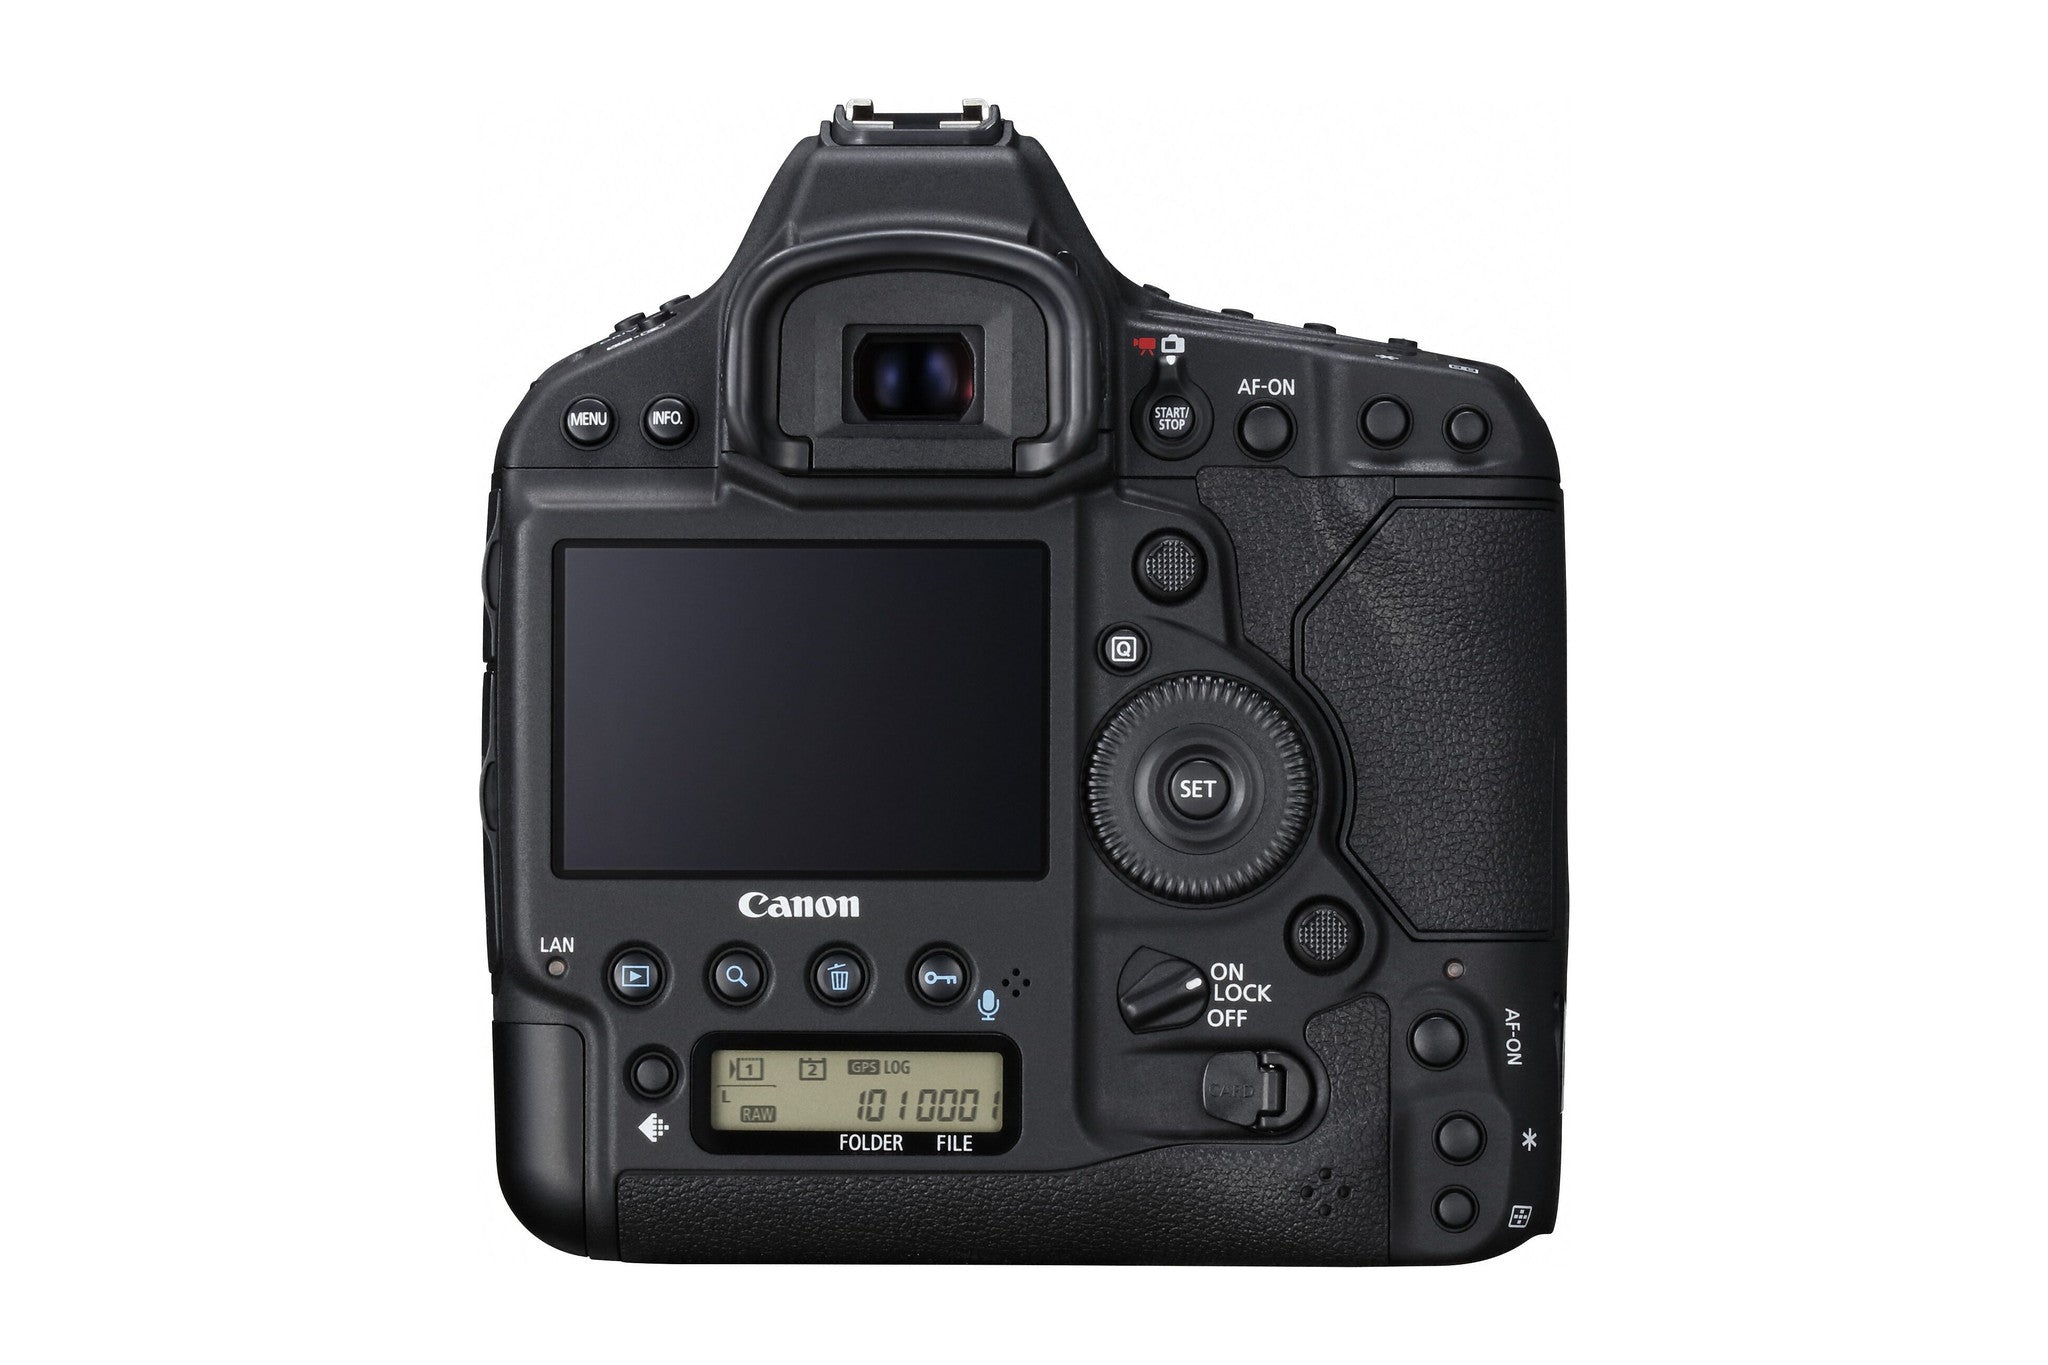 Canon EOS 1D X Mark II Digital Camera Body, camera dslr cameras, Canon - Pictureline  - 2